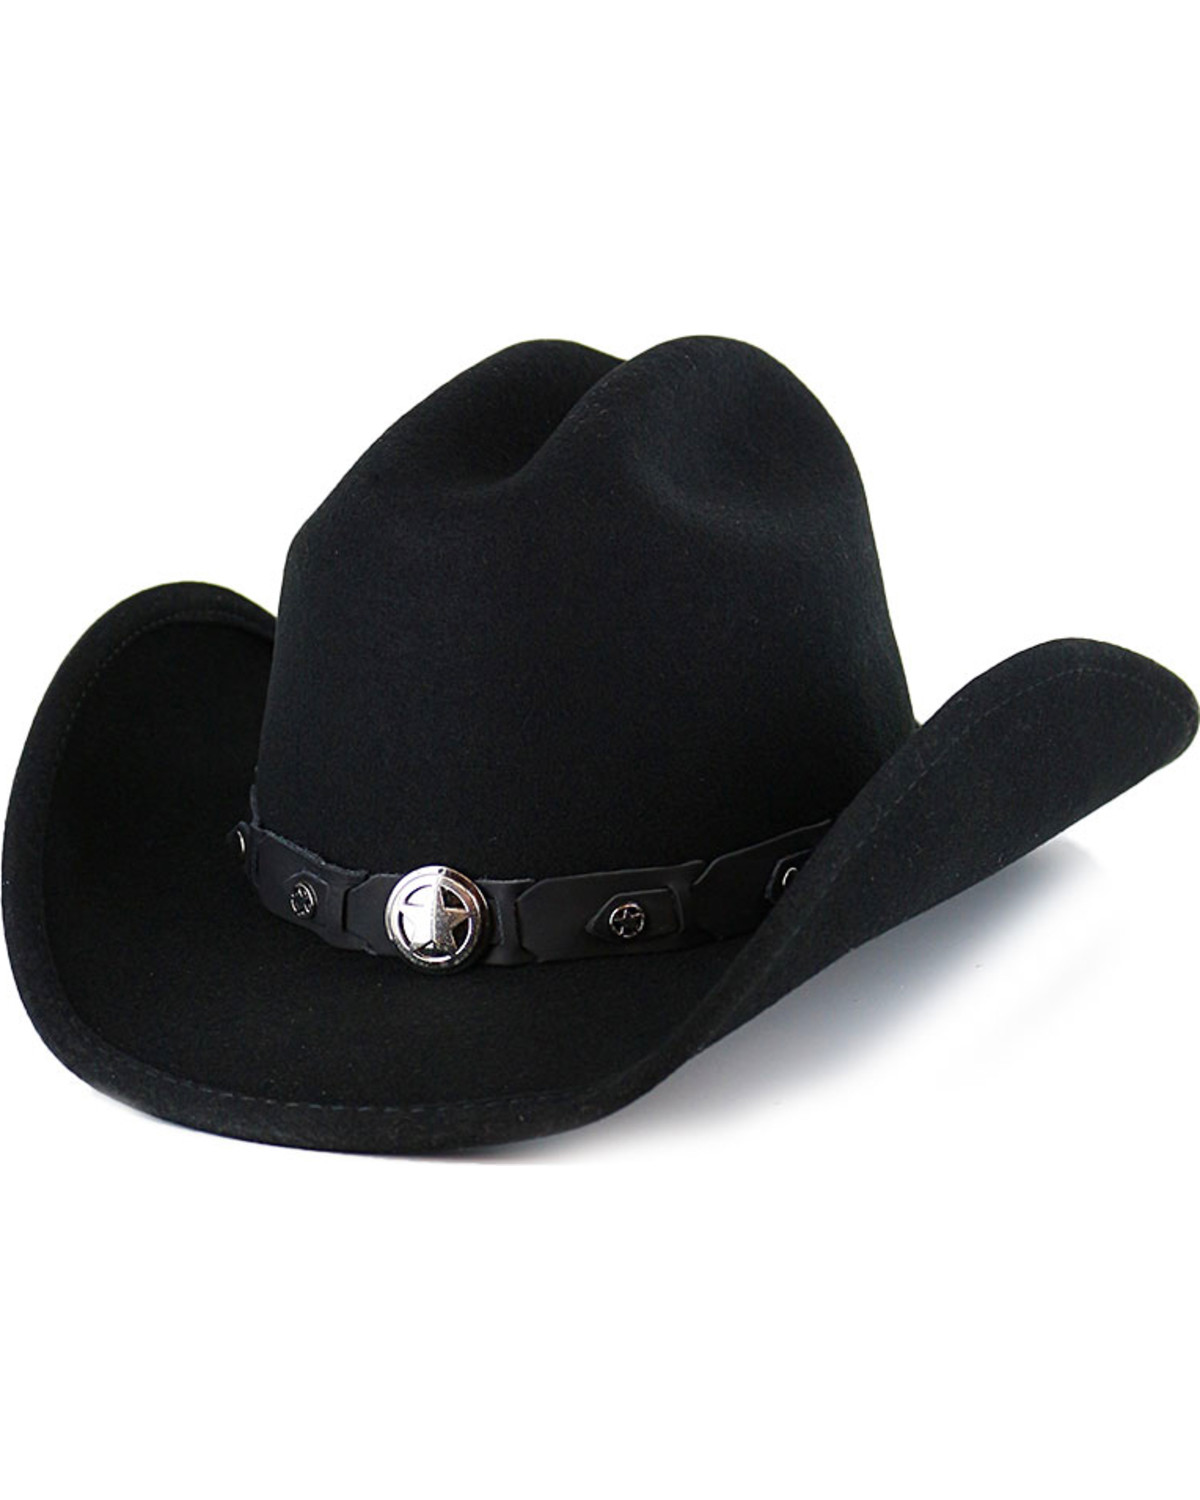 Cody James Boys' Sidekick Felt Cowboy Hat